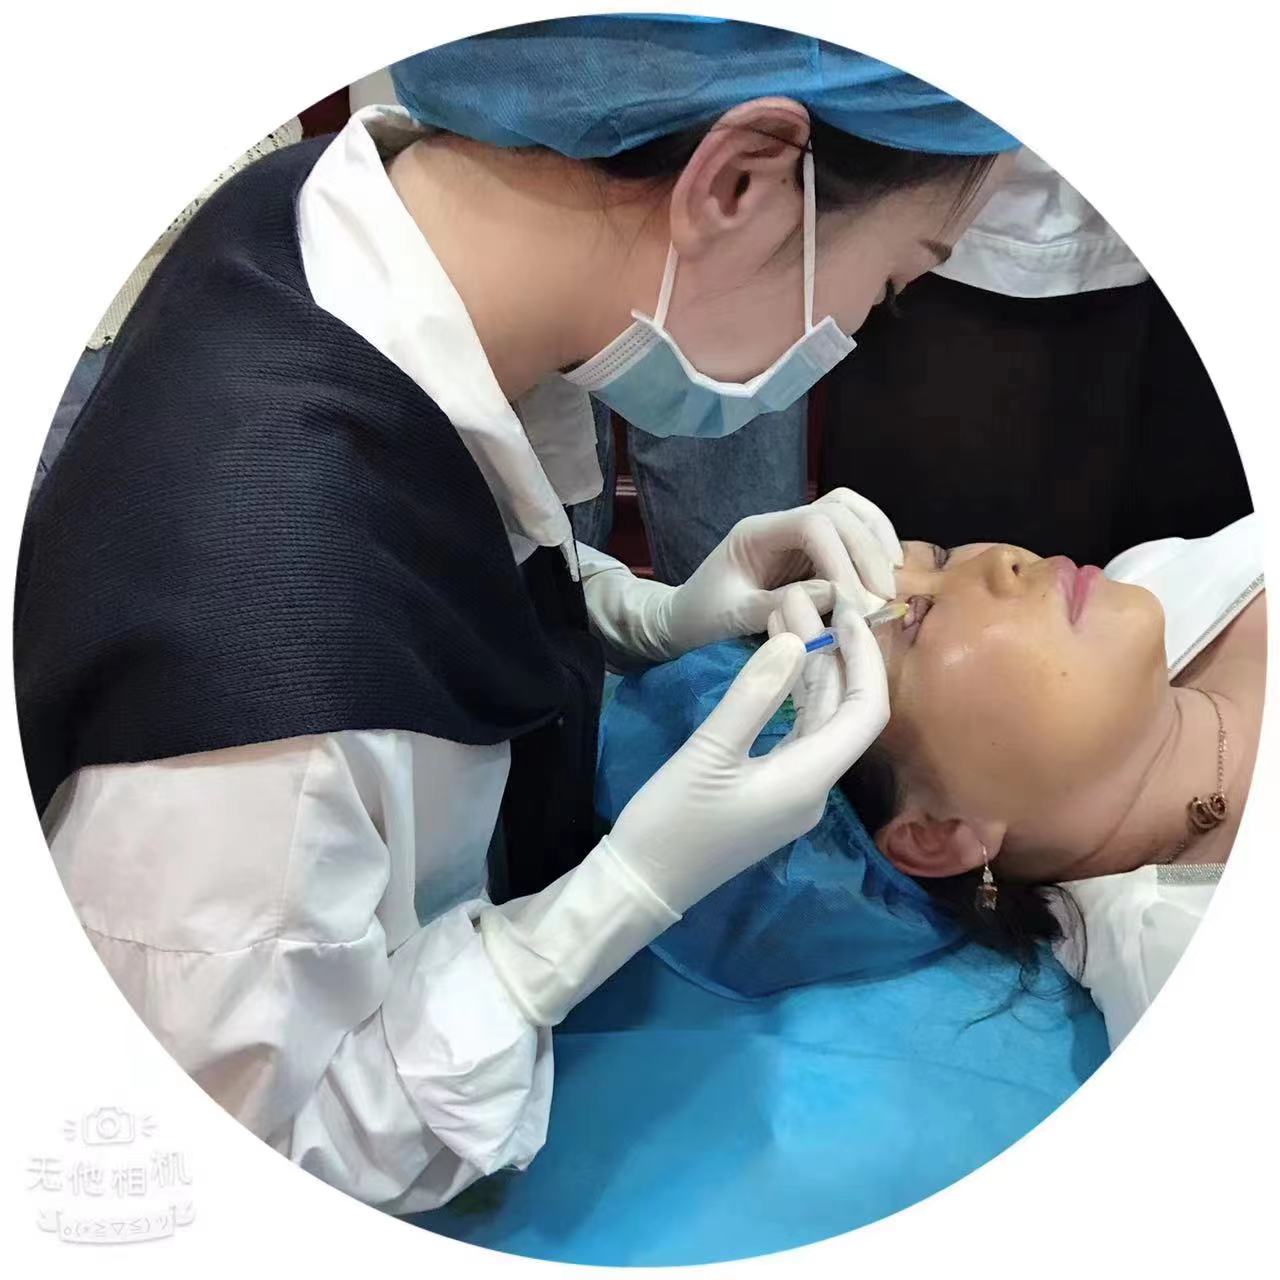 北京丰台区专业微整形培训隆鼻手术切口选择对不对